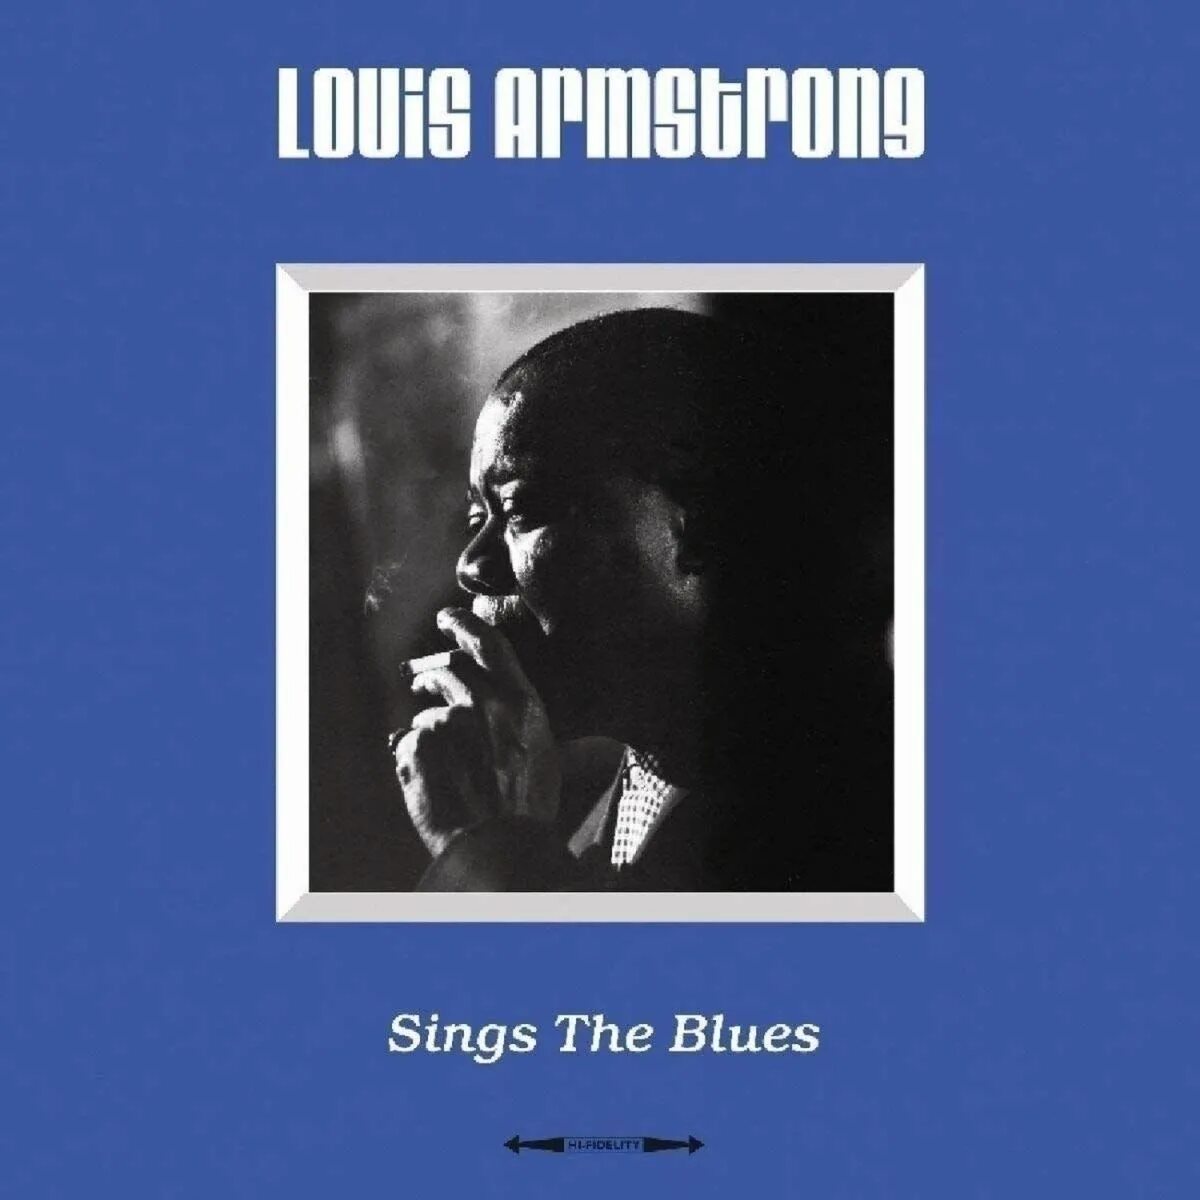 Луи Армстронг. Louis Armstrong singing. Луи Армстронг пластинка. Джаз, блюз и соул.